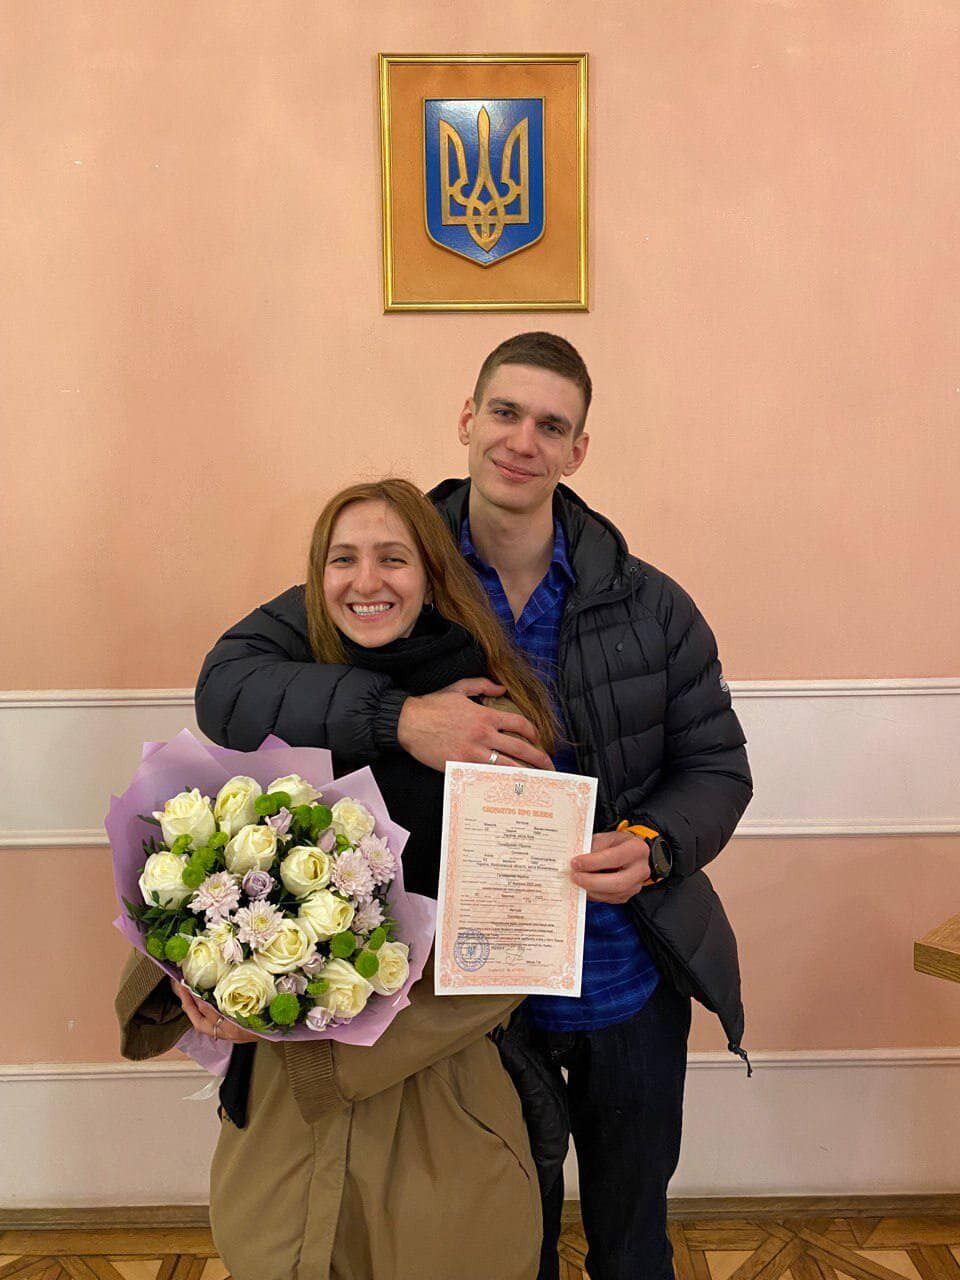 Одружився і наступного дня пішов воювати: скелелаз та мандрівник загинув на Донбасі, виявивши 30 одиниць техніки ворога